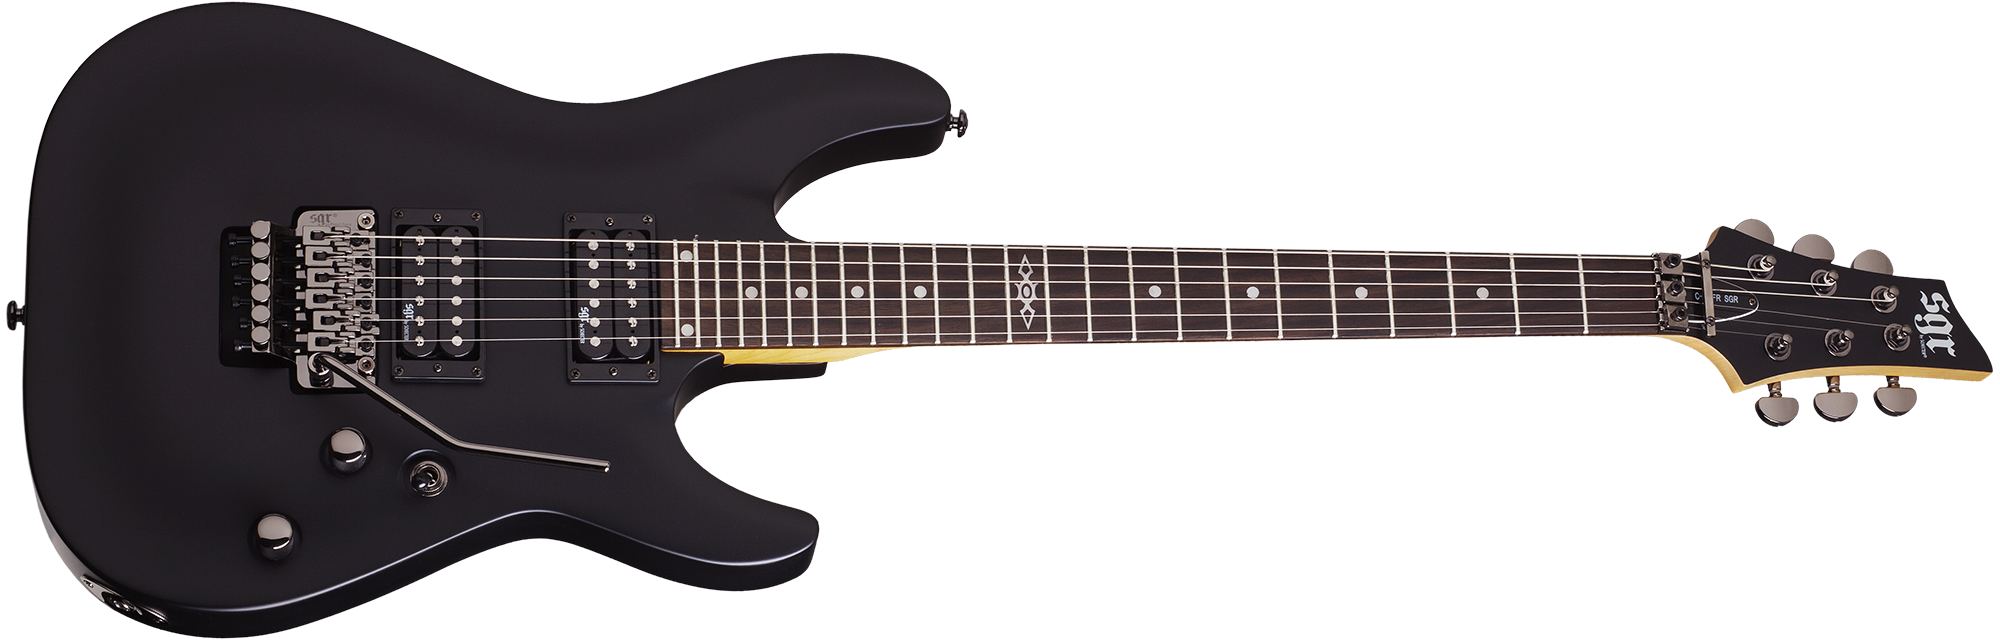 Schecter C-1 FR SGR by Schecter in Midnight Satin Black MSBK SKU 3836 - The Guitar World